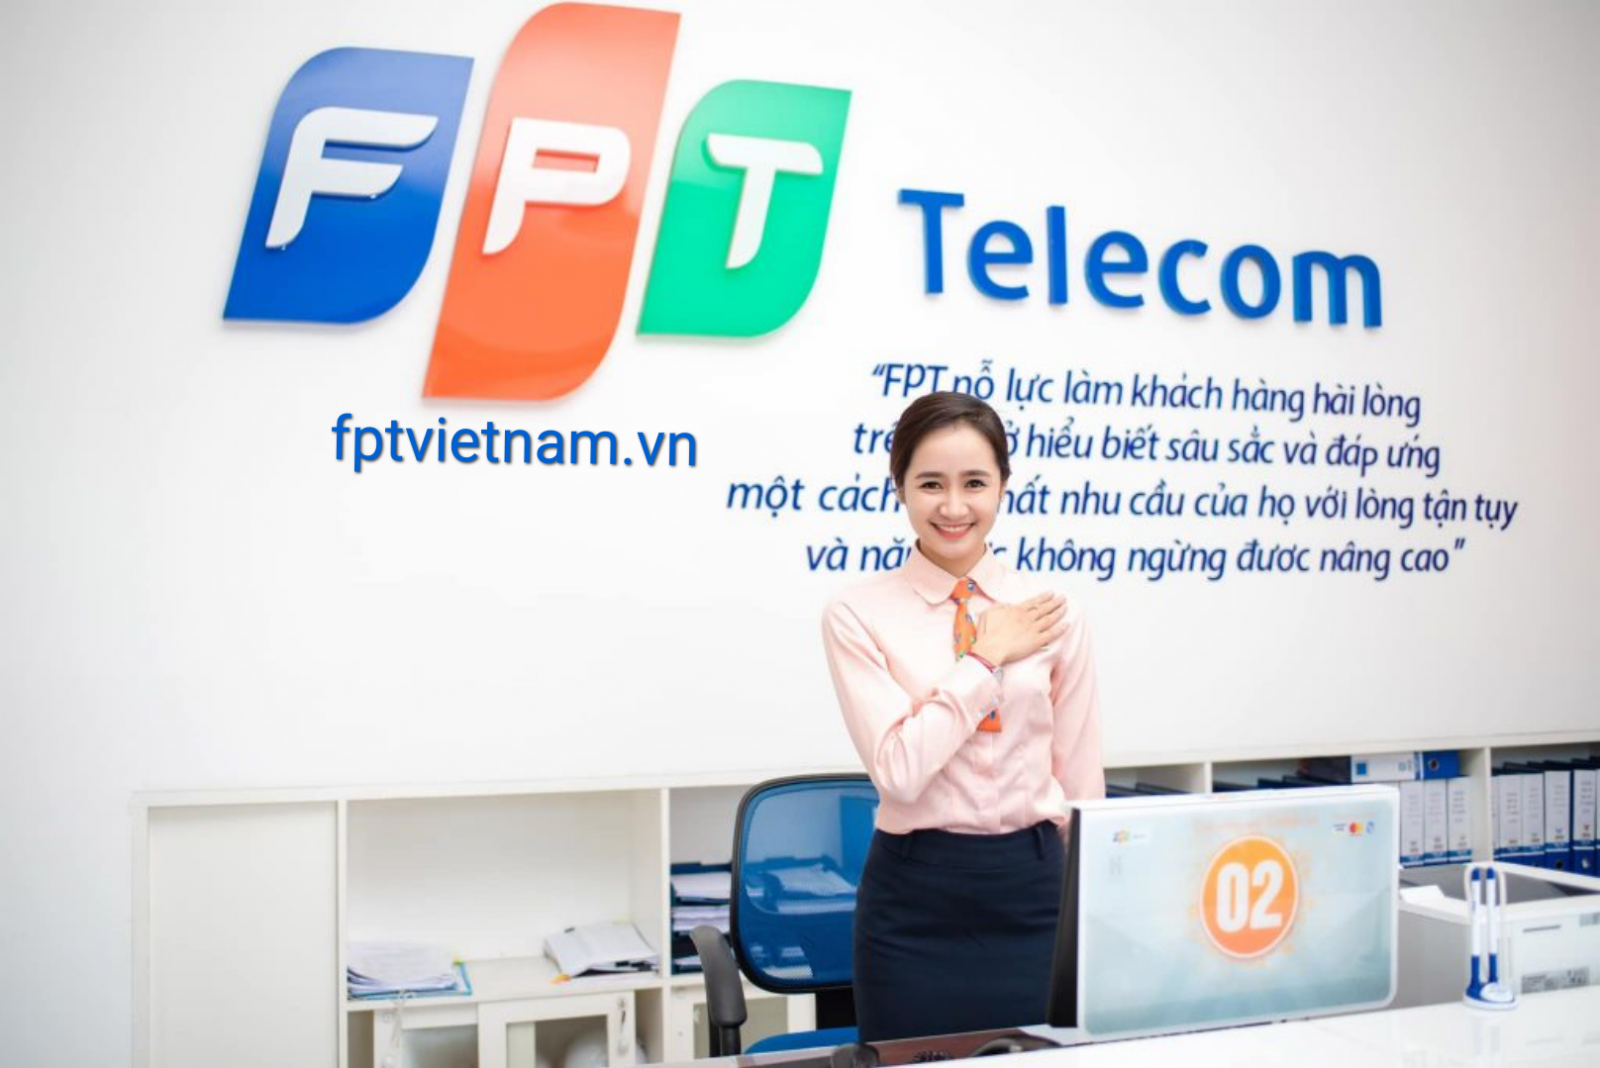 dịch vụ fpt telecom Yên Bái